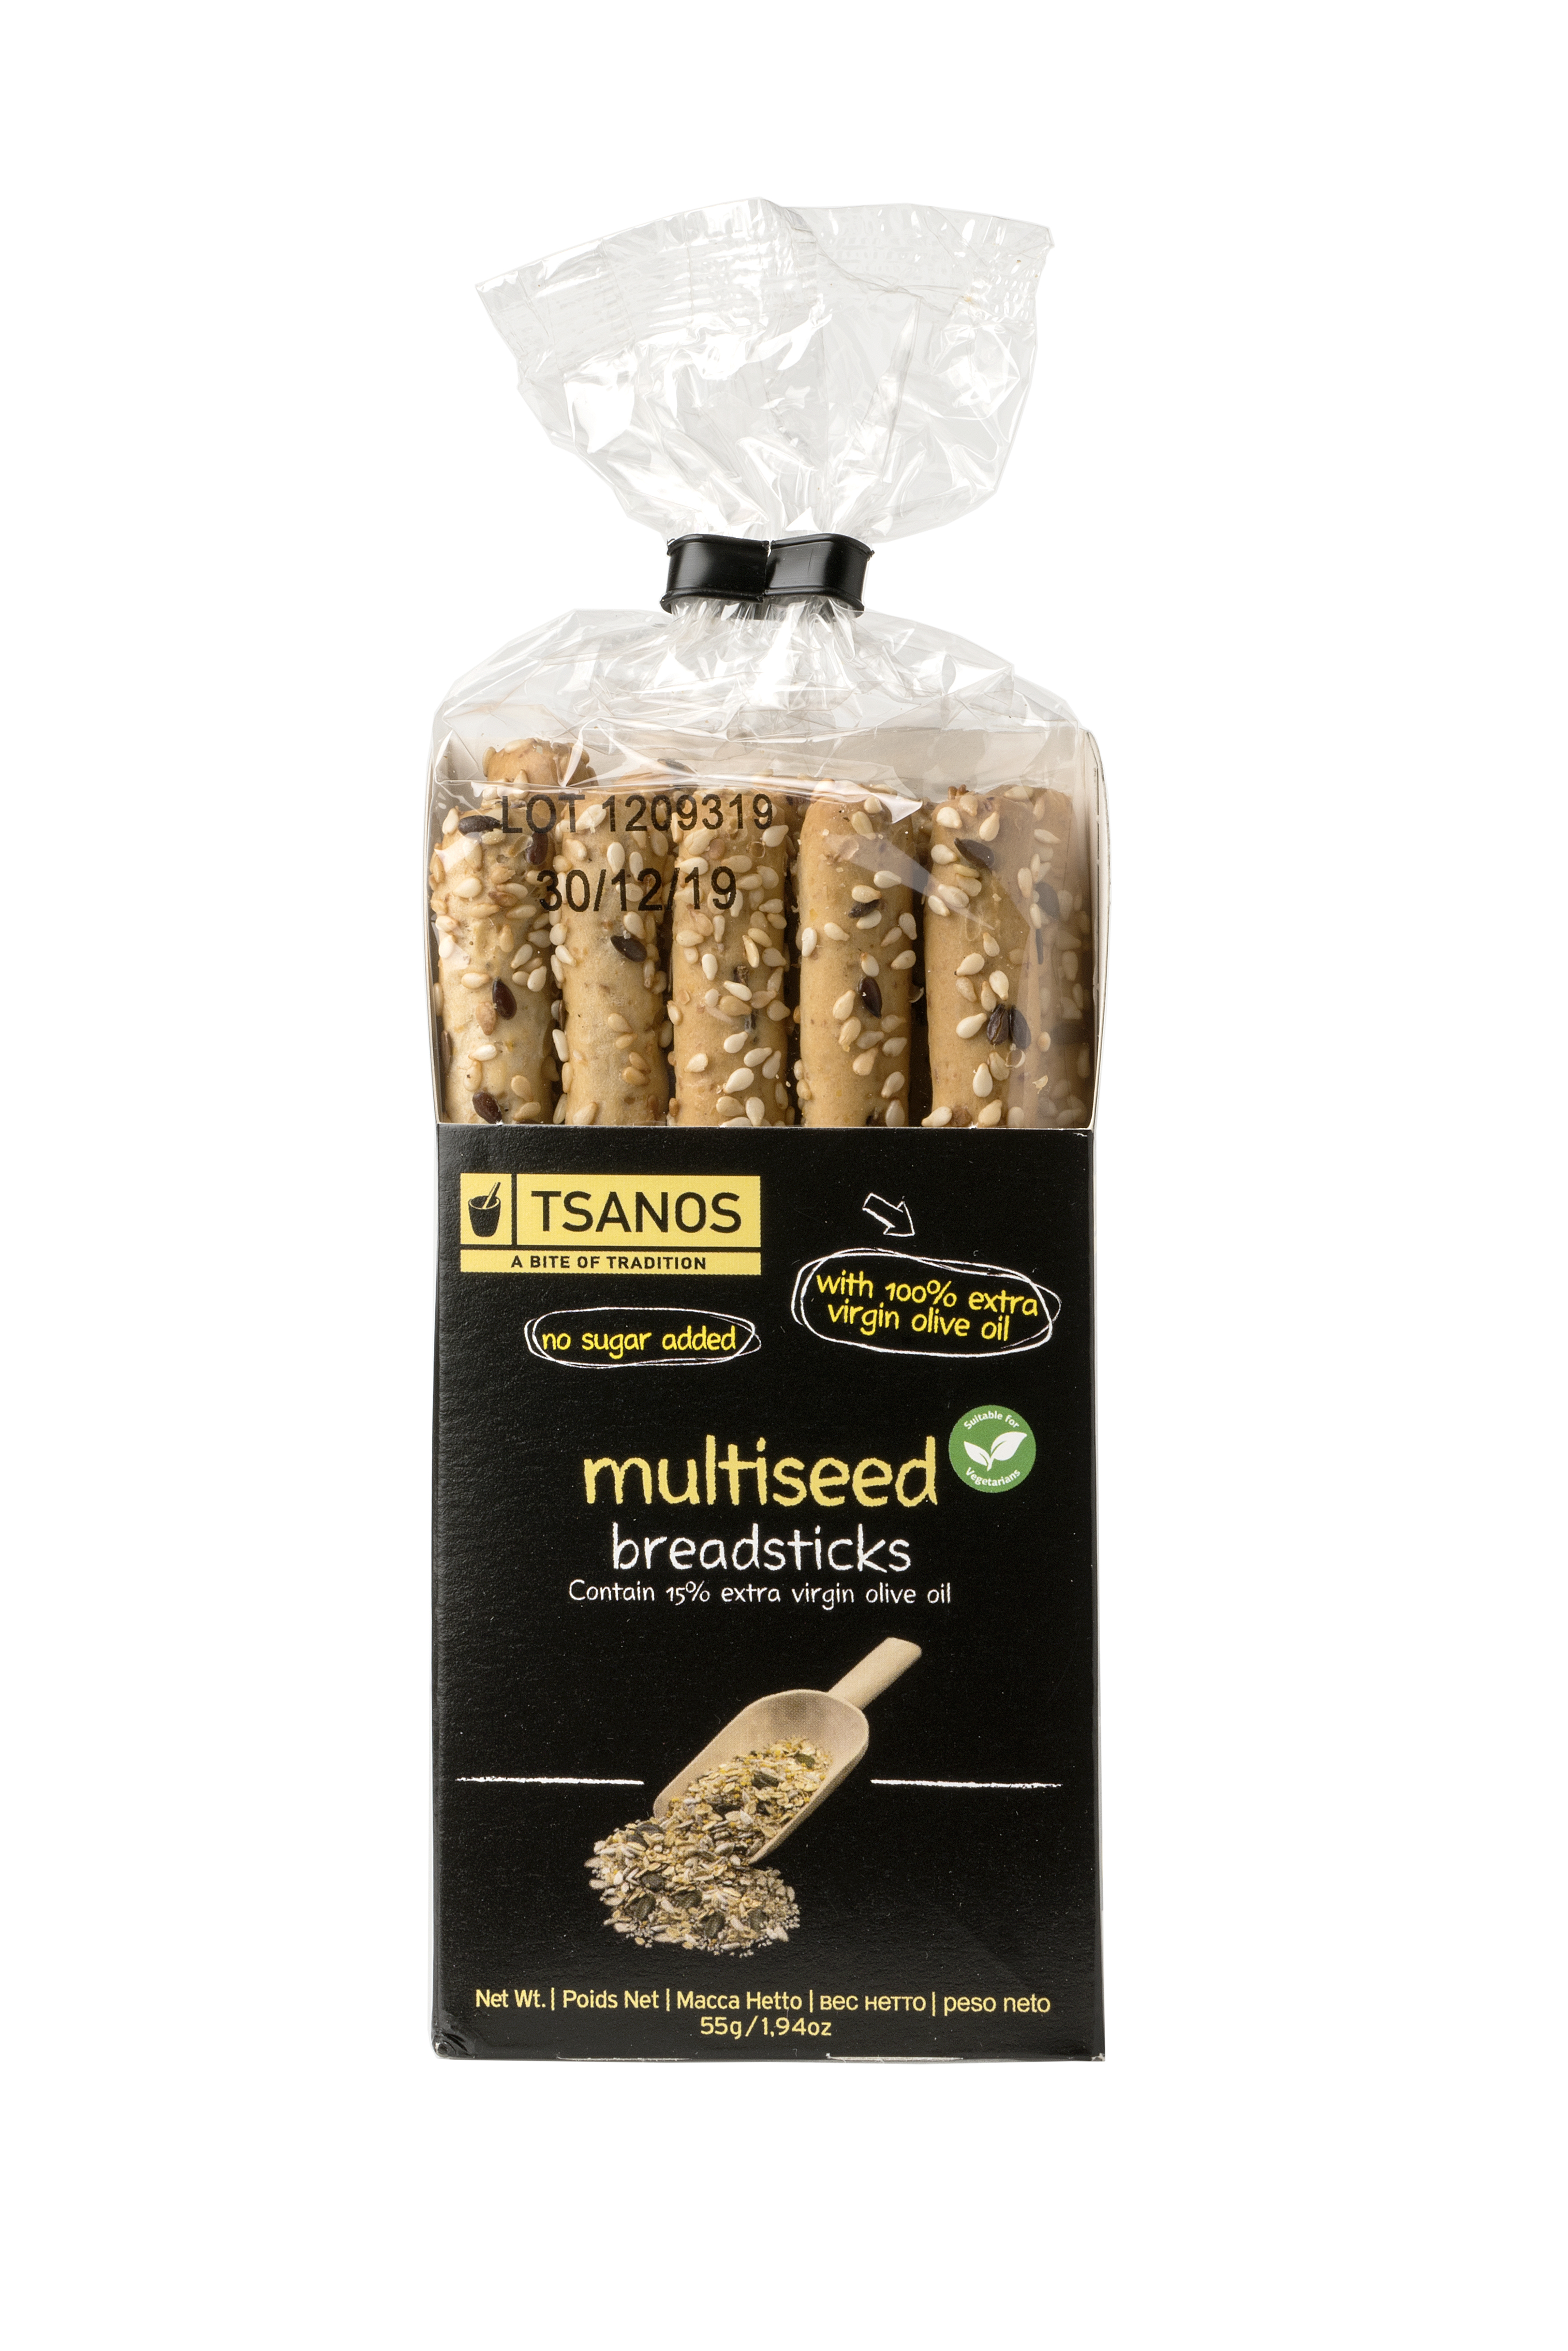 Multiseed Breadsticks